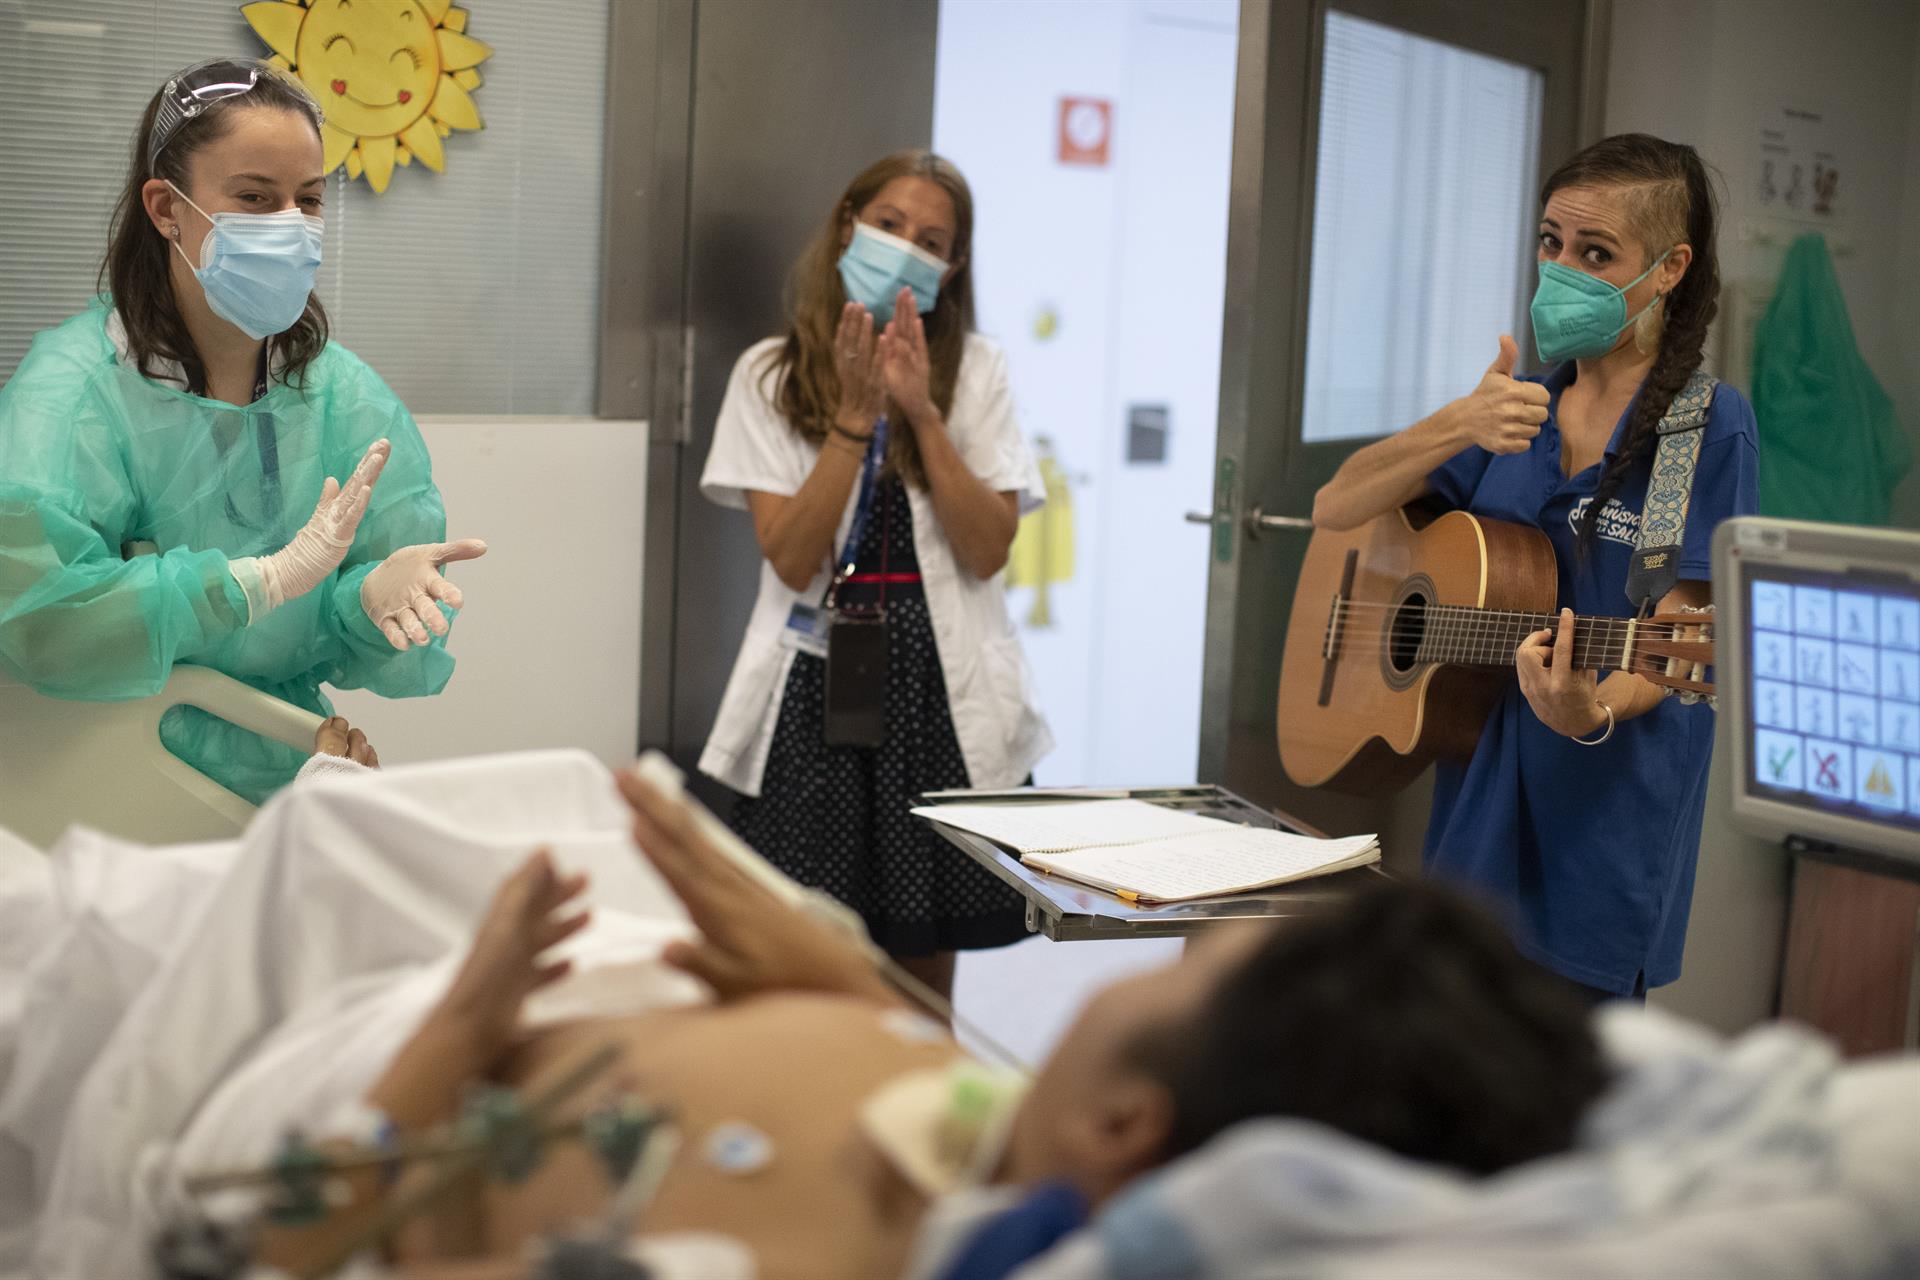 La ONG Músicos por la Salud ofrece hoy conciertos personalizados en directo a pacientes del Hospital Vall d'Hebron.